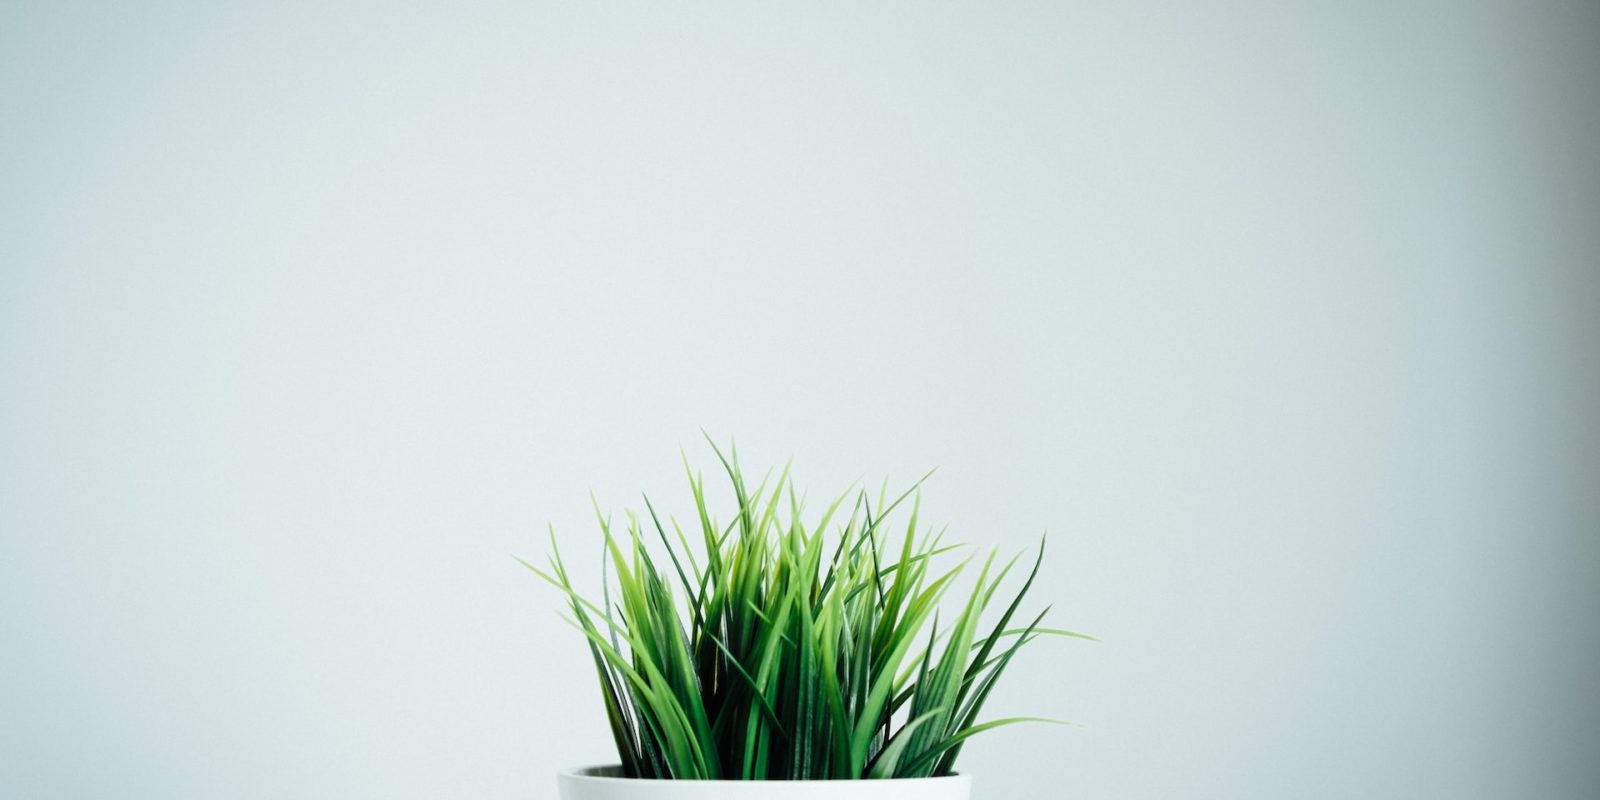 grow-cat-grass.jpg